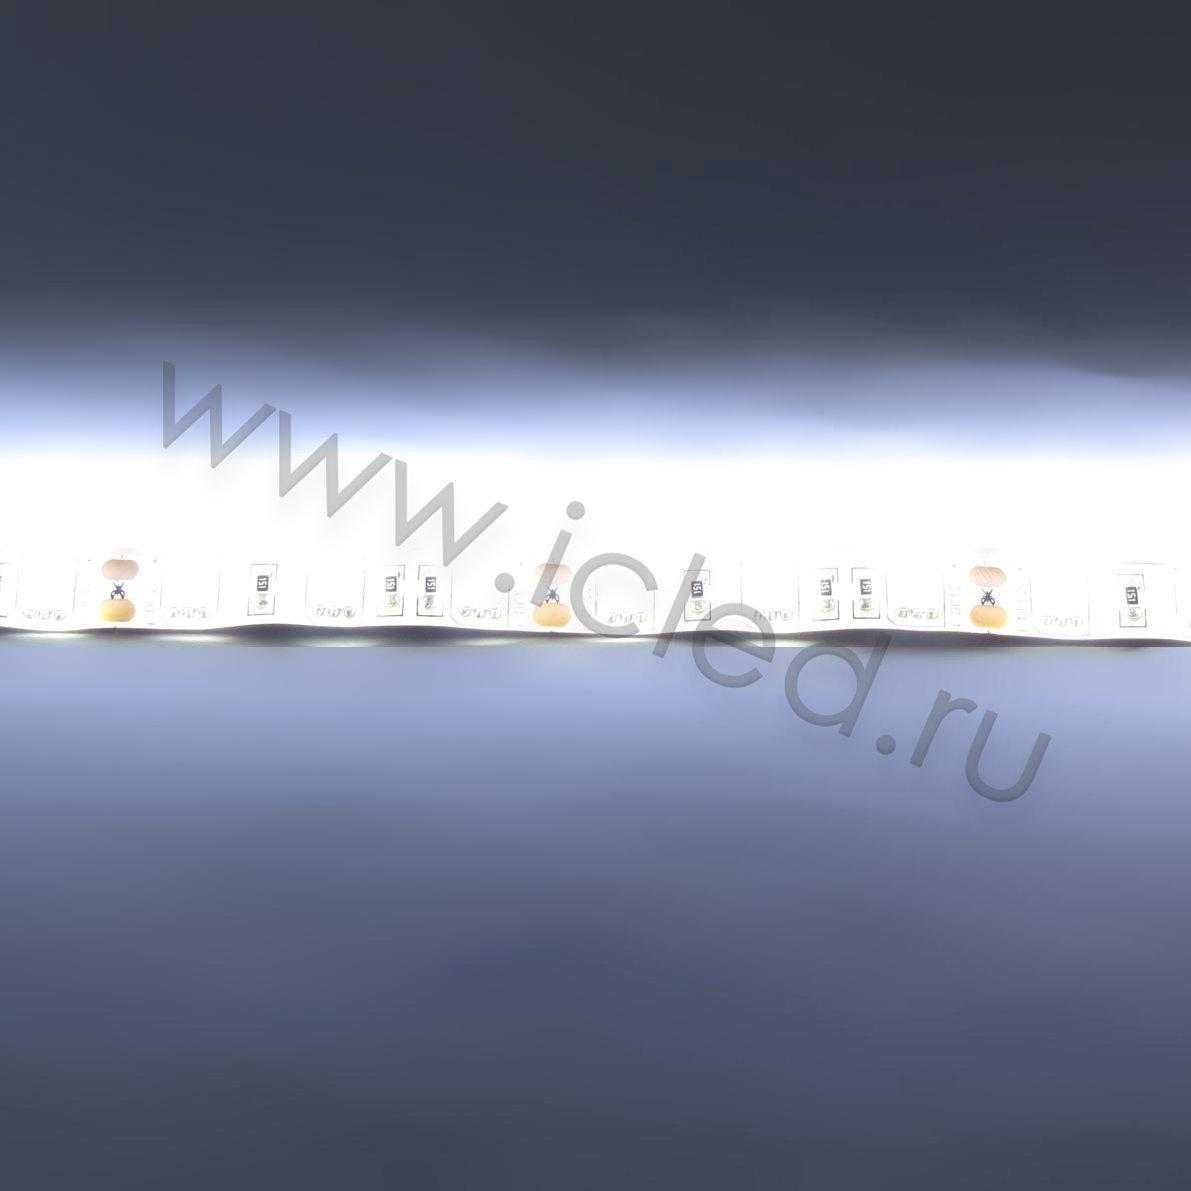 Влагозащищенные светодиодные ленты Светодиодная лента LUX class, 5050, 60 led/m, White,12V, IP65 Icled